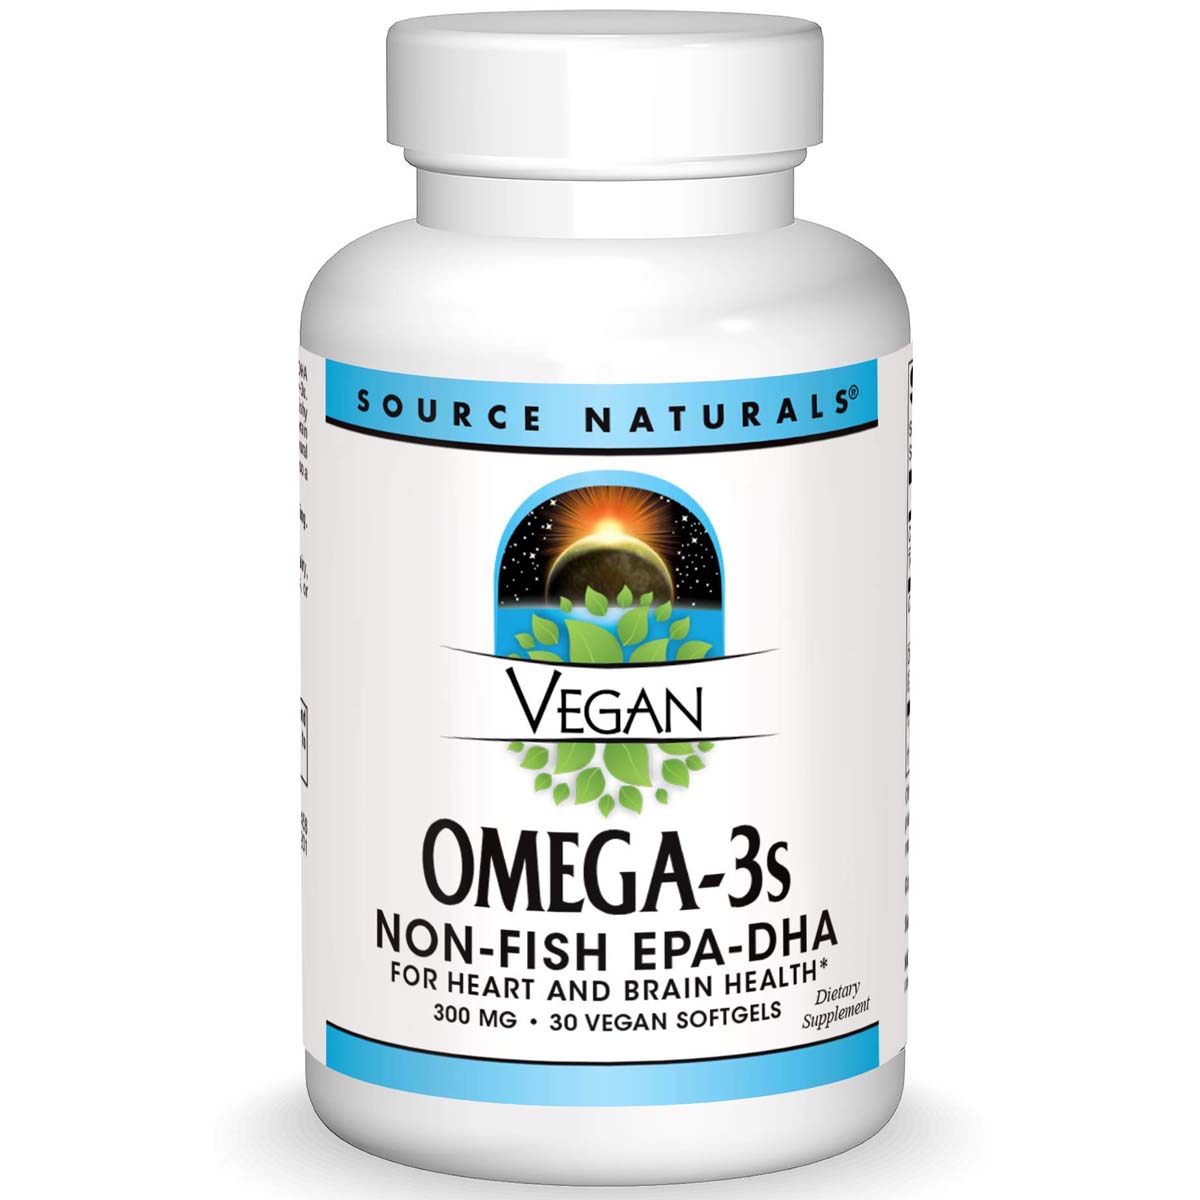 Source Naturals Vegan Omega 3 Non-Fish 30 Vegan Softgels 300 mg